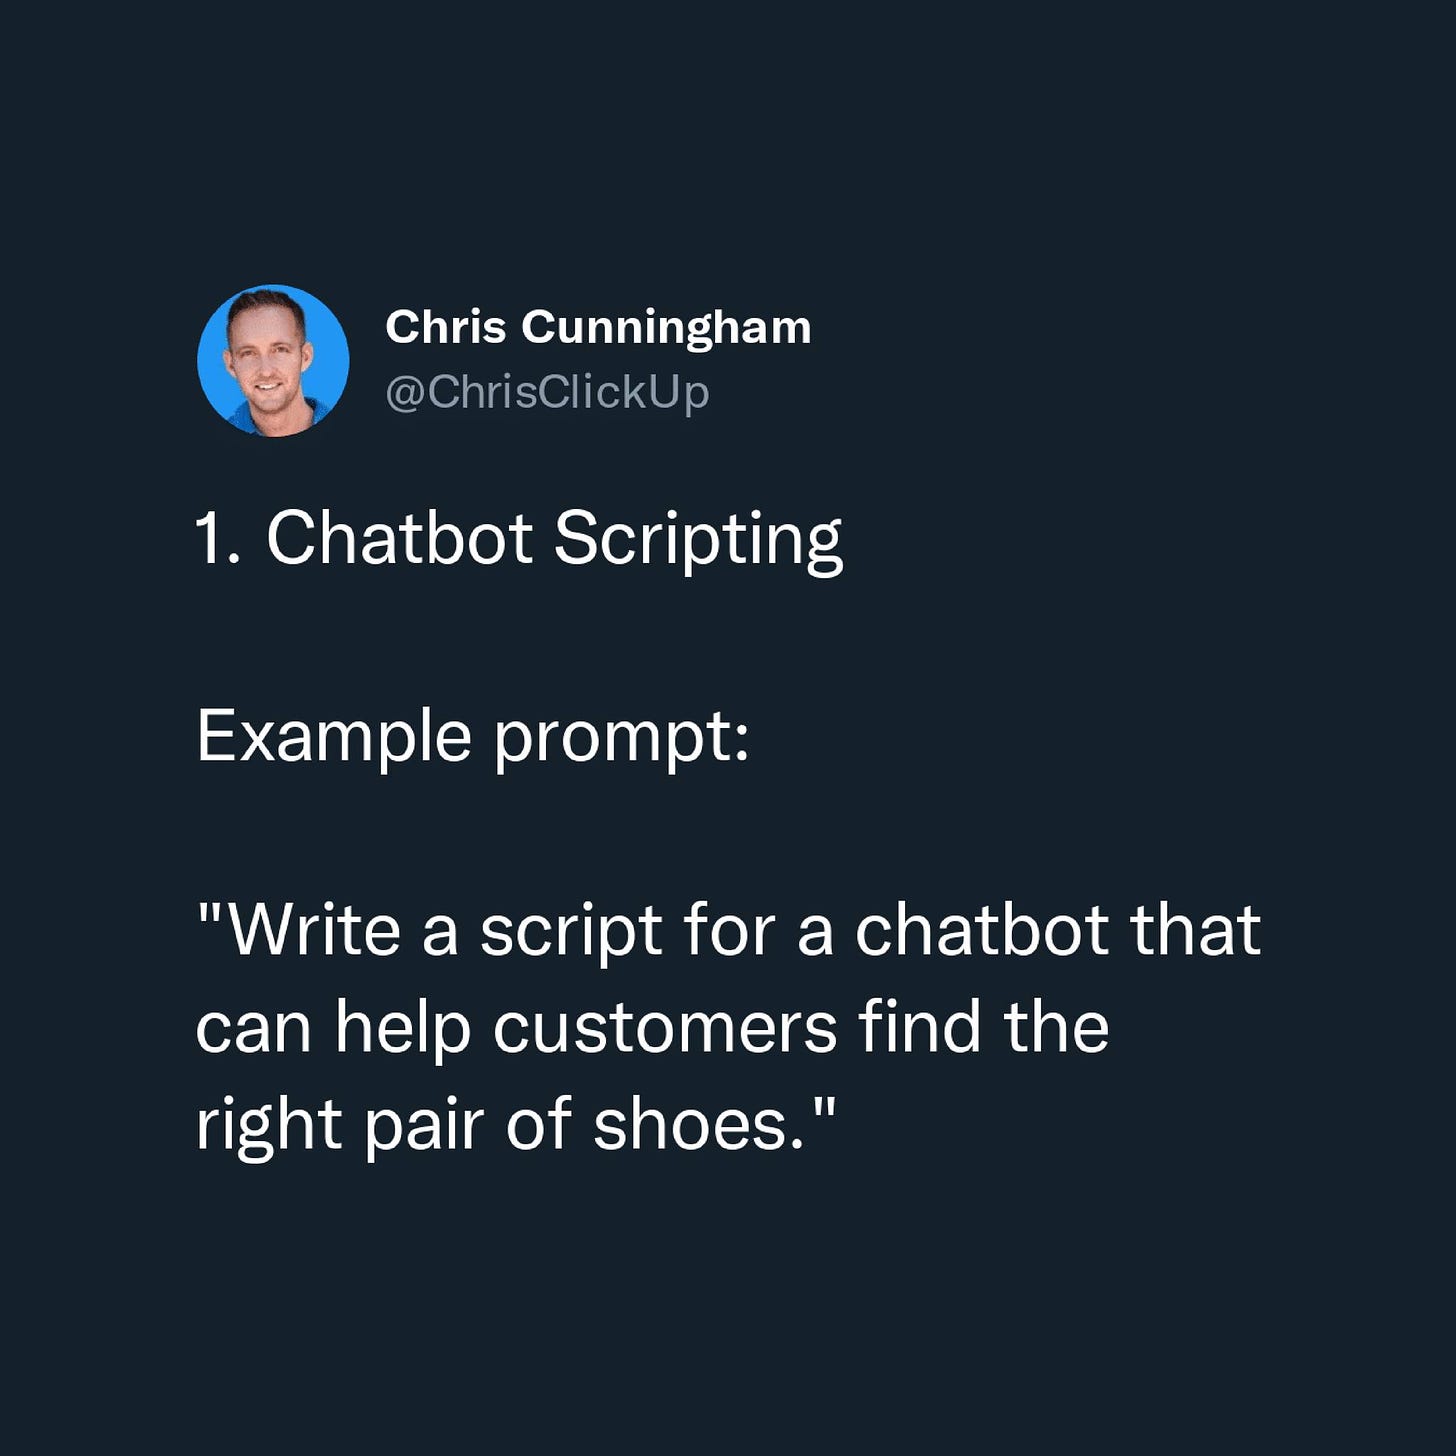 Có thể là ảnh chụp màn hình Twitter về 1 người và văn bản cho biết 'Chris . Cunningham @ChrisClickUp 1. Chatbot Scripting Example prompt: "Write a script for a chatbot that can help customers find the right pair of shoes.'